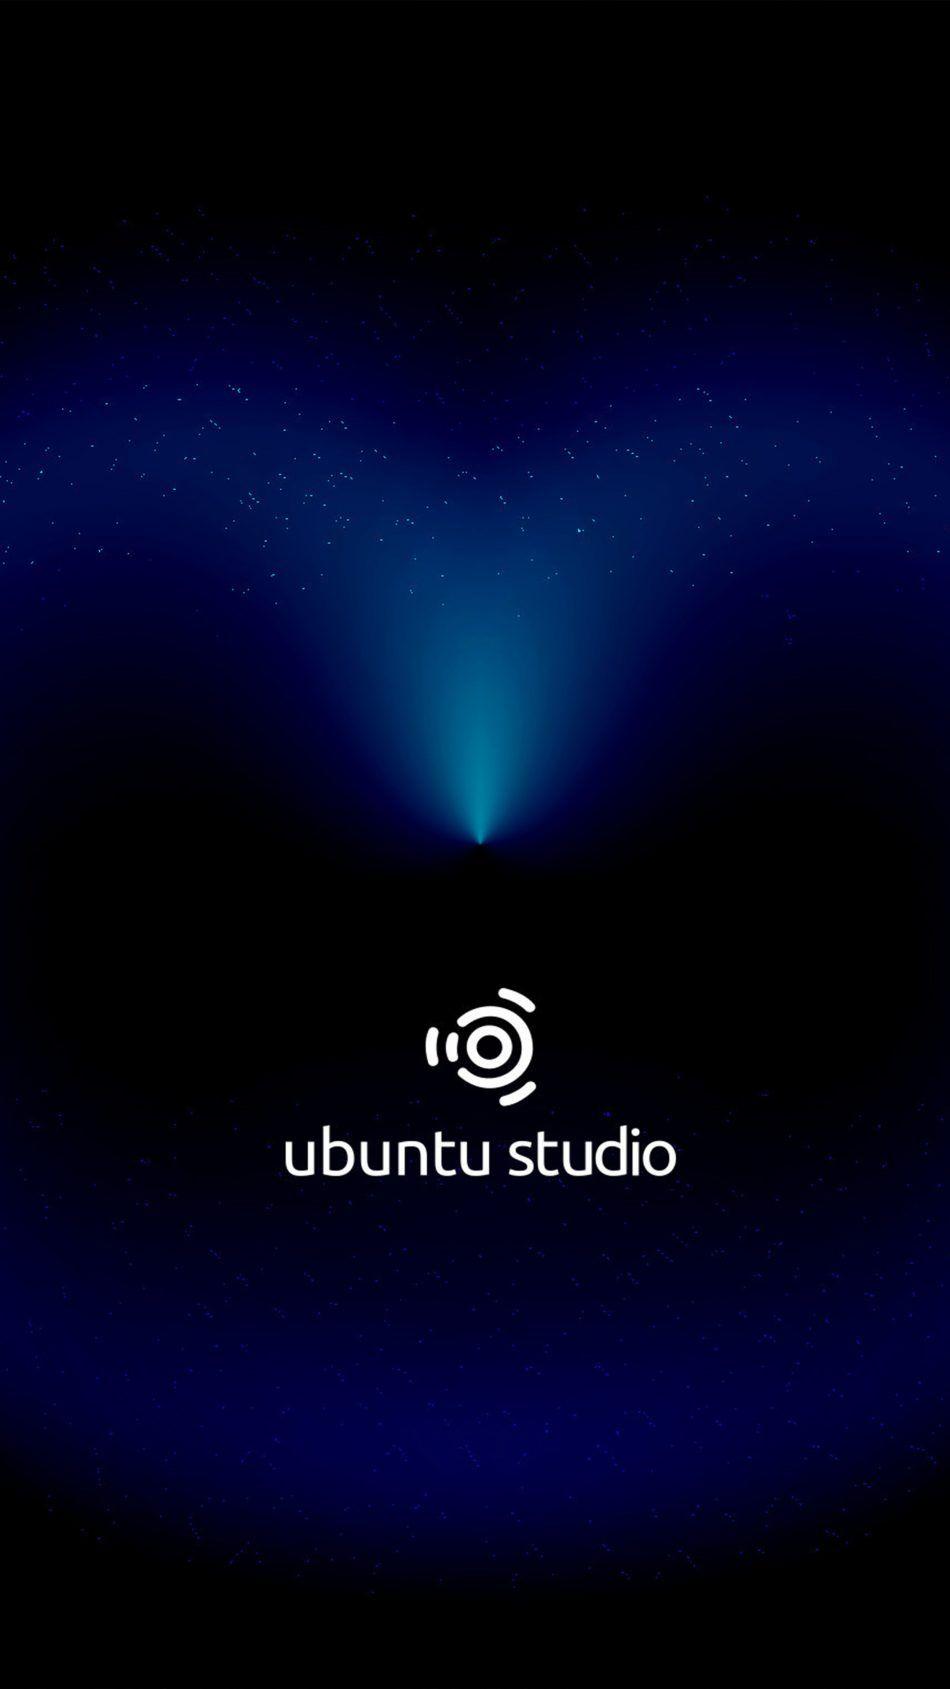 Ubuntu Studio Dark Cosmic Black Free 4K Ultra HD Mobile Wallpaper